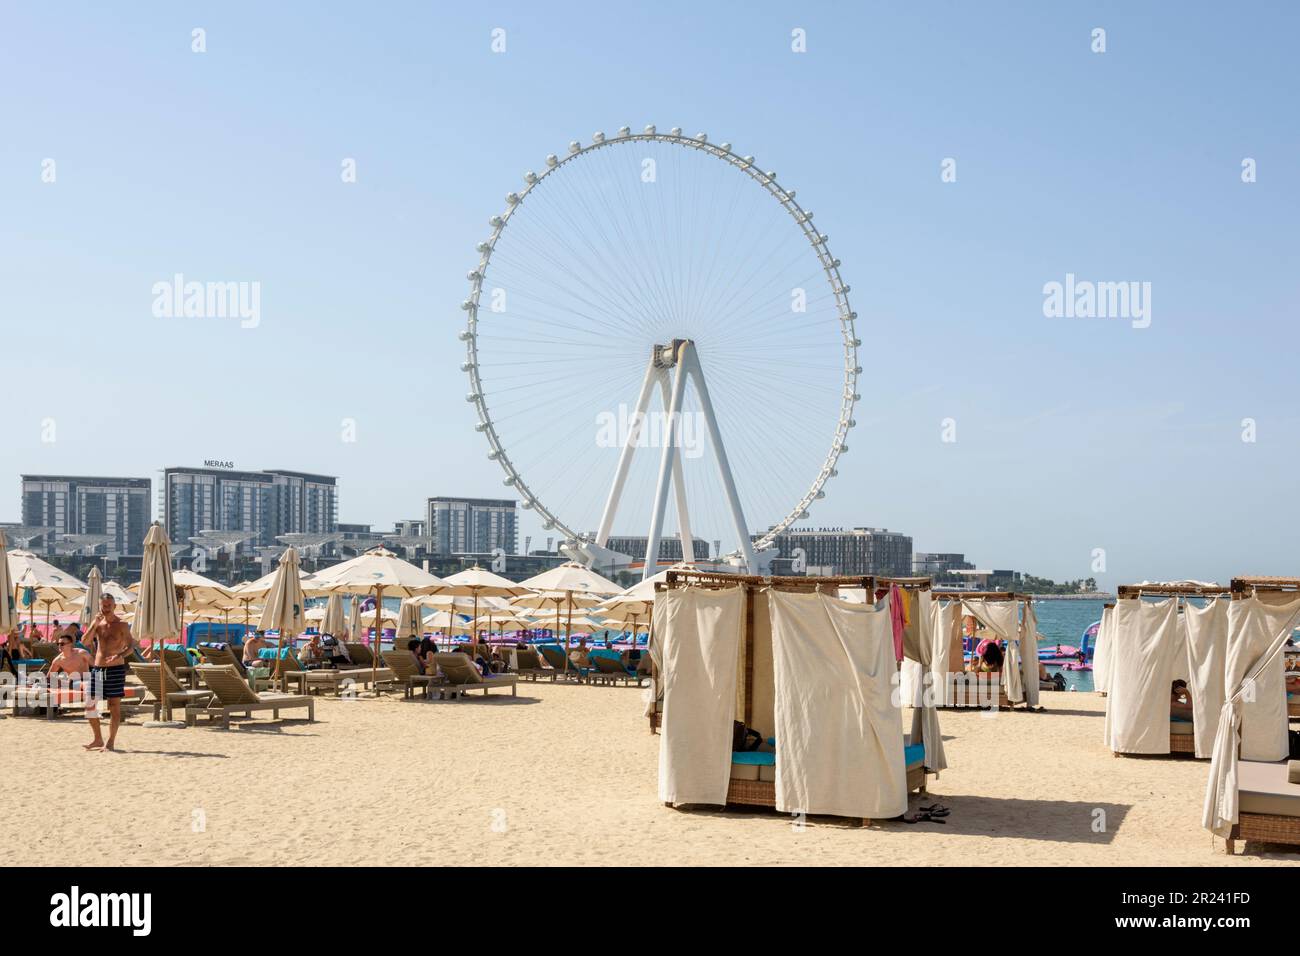 Vue sur la grande roue de l'Ain Dubai depuis la Marina Beach de Dubaï. Avec sa hauteur de 210m, il est la plus grande grande roue du monde, Dubaï, Émirats arabes Unis Banque D'Images